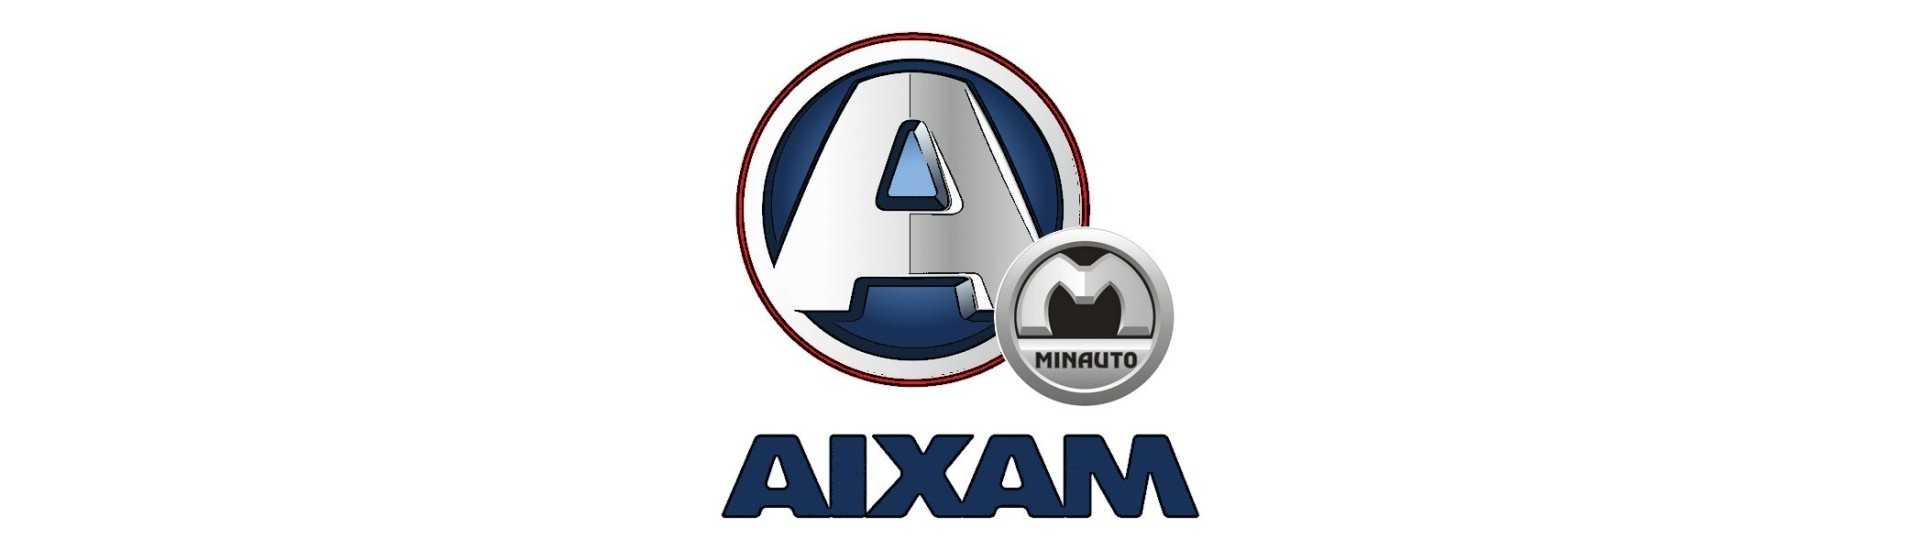 Bästa priset på luftfläkt för bil utan körkort Aixam Minauto